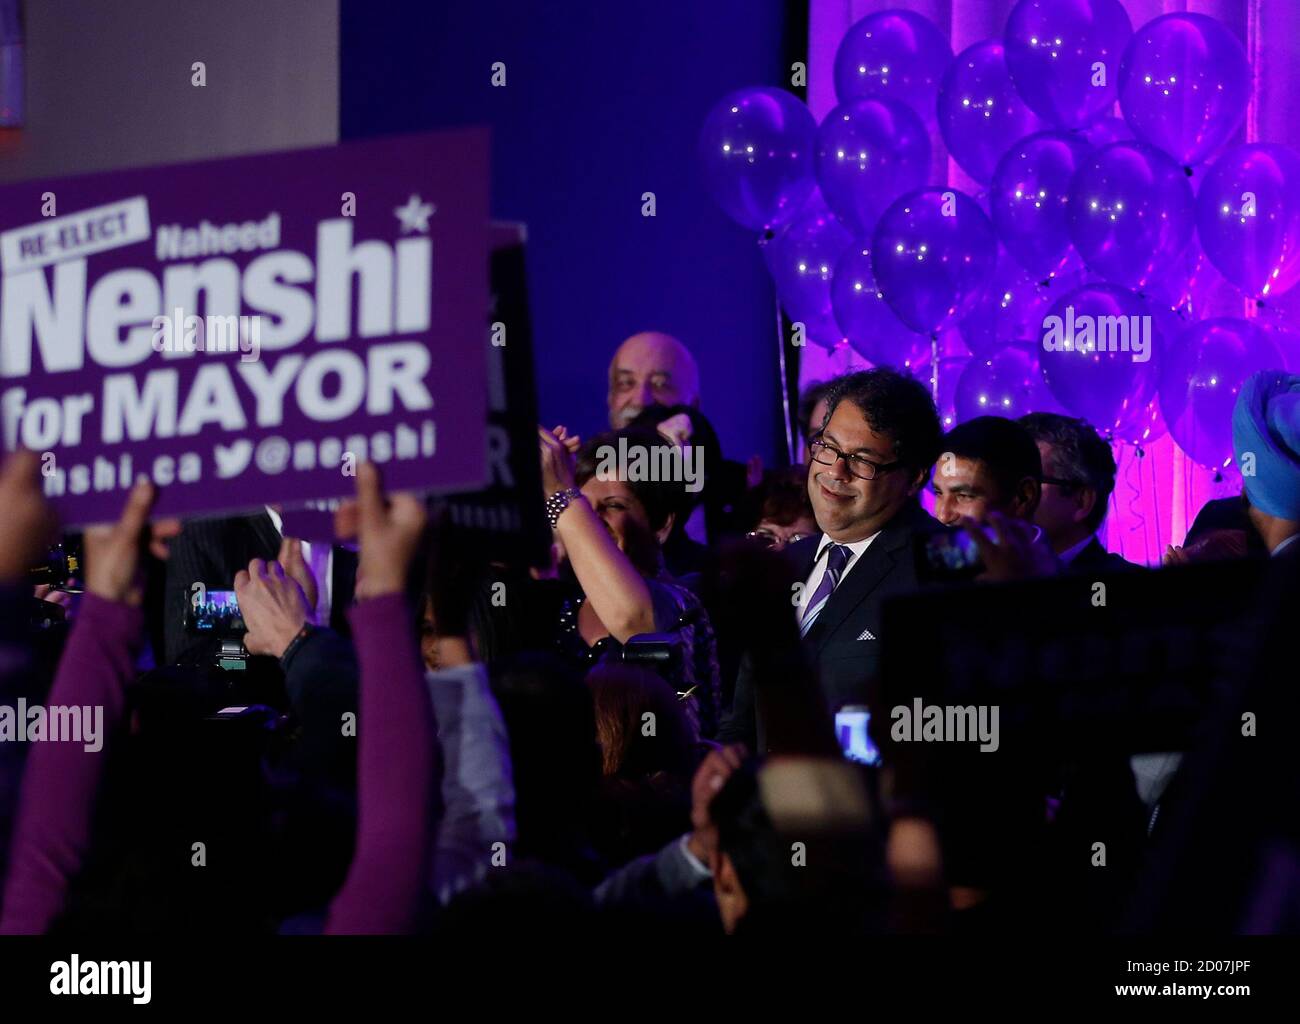 Naheed Nenshi sonríe a sus partidarios después de que fue elegido alcalde de Calgary para un segundo mandato en Calgary, Alberta, el 21 de octubre de 2013. En 2010, Nenshi fue elegido el primer alcalde musulmán de una ciudad norteamericana importante. REUTERS/Todd Korol (CANADÁ - Tags: ELECCIONES POLÍTICAS) Foto de stock